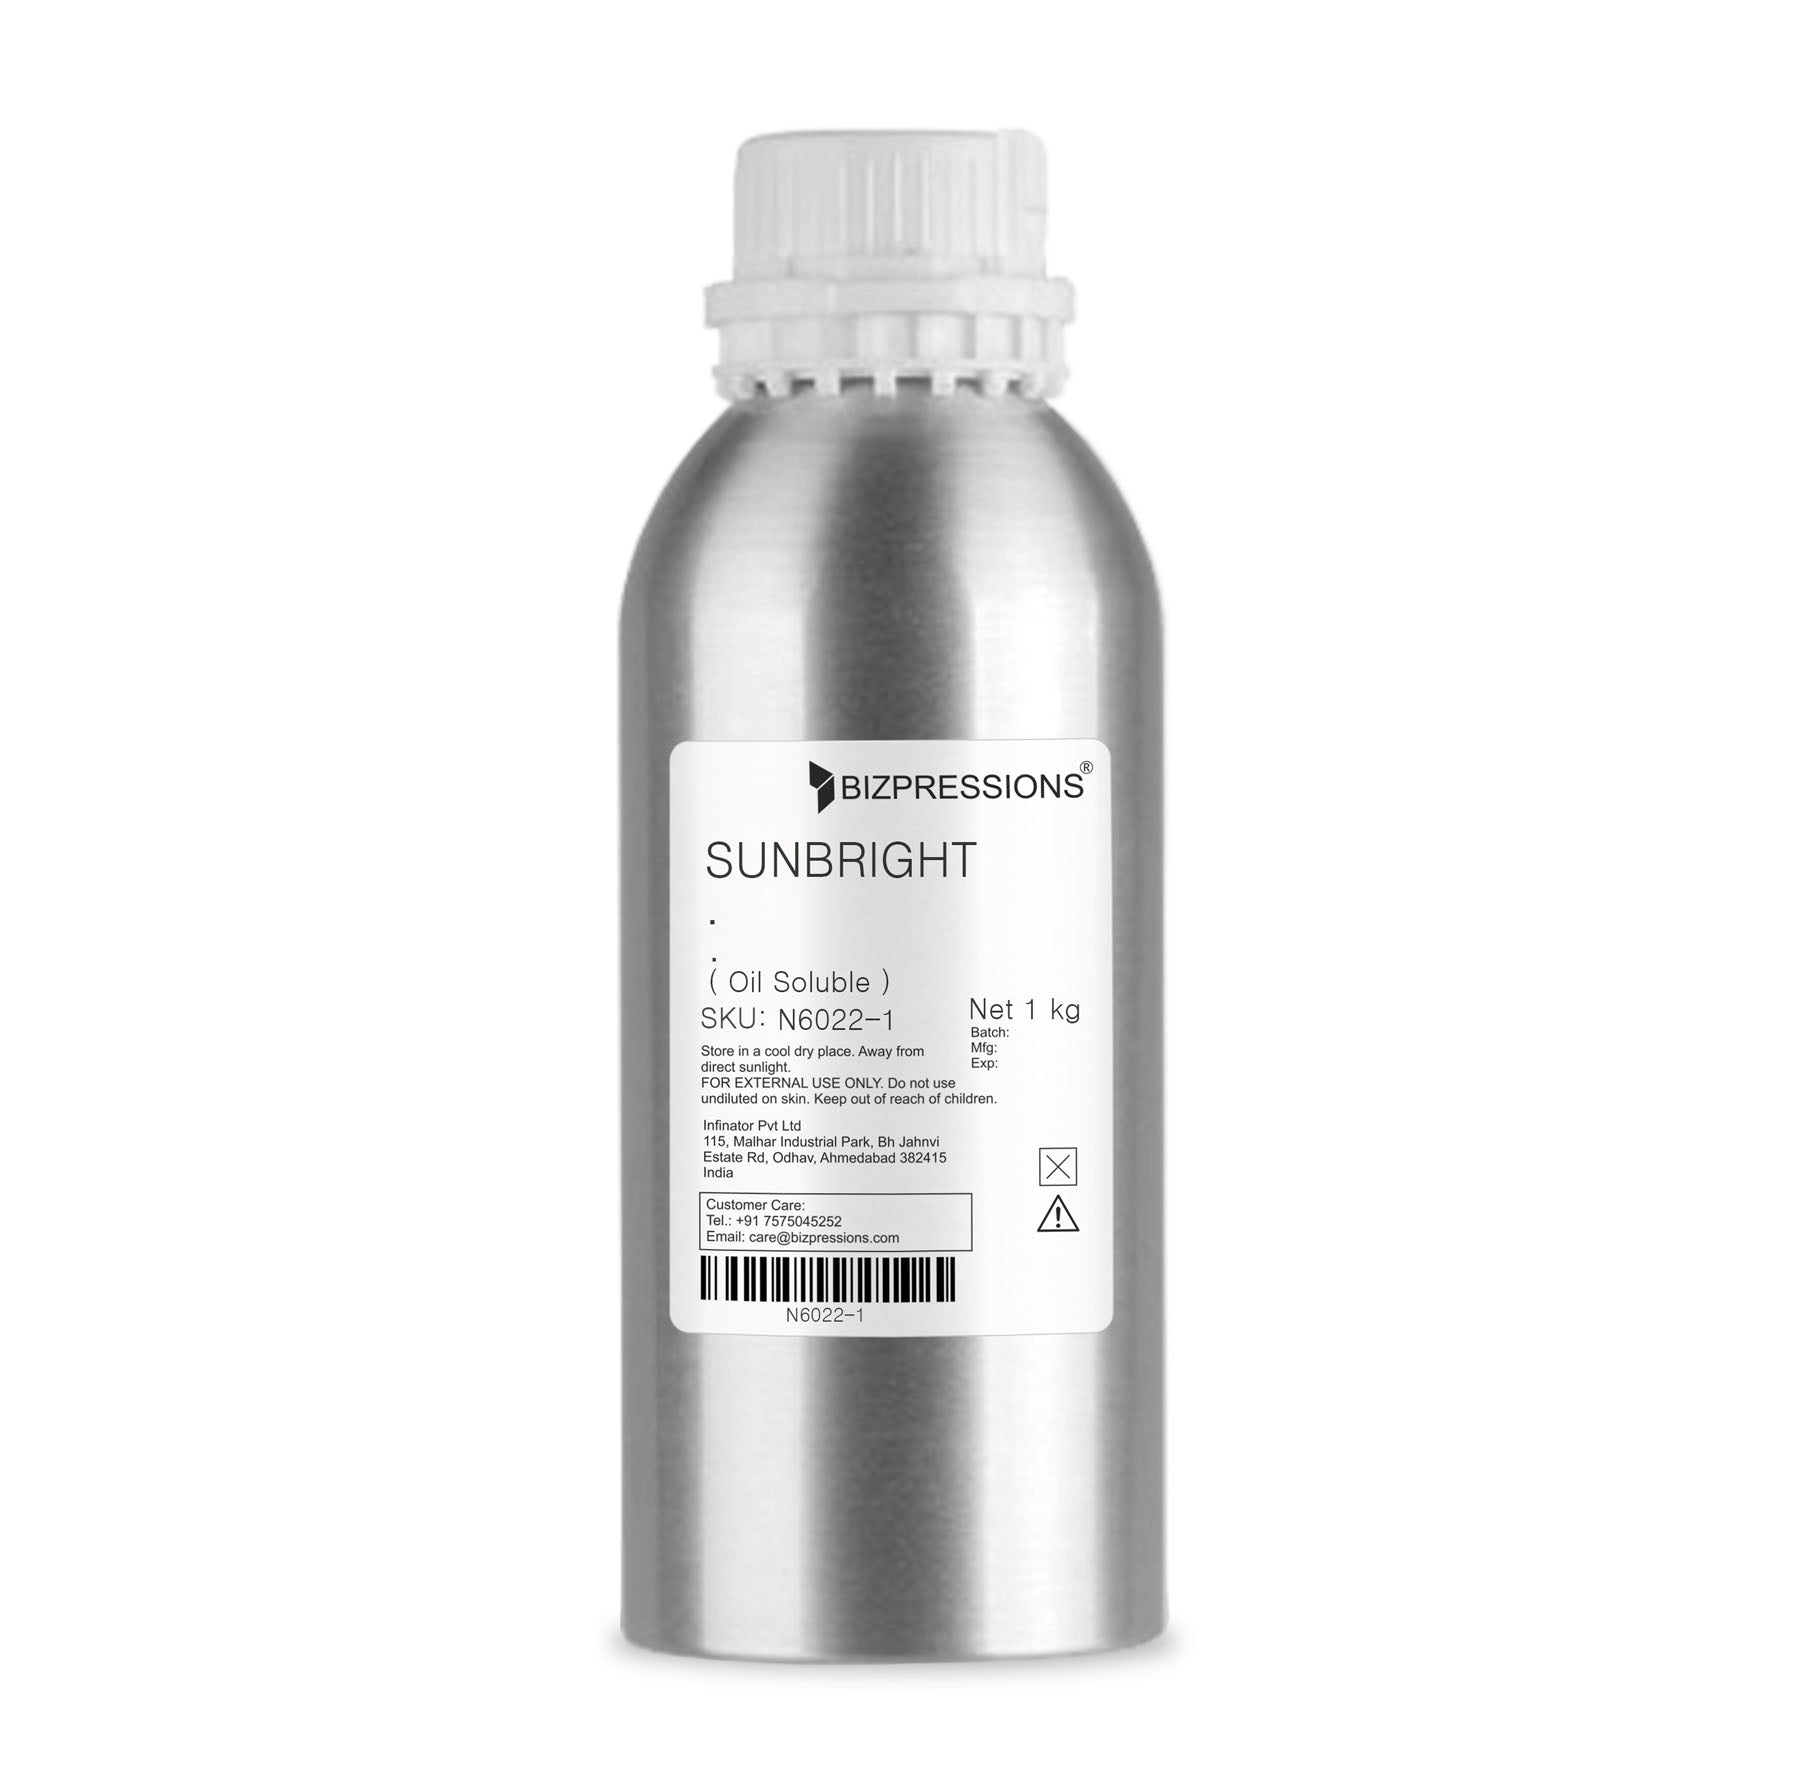 SUNBRIGHT - Fragrance ( Oil Soluble ) - 1 kg